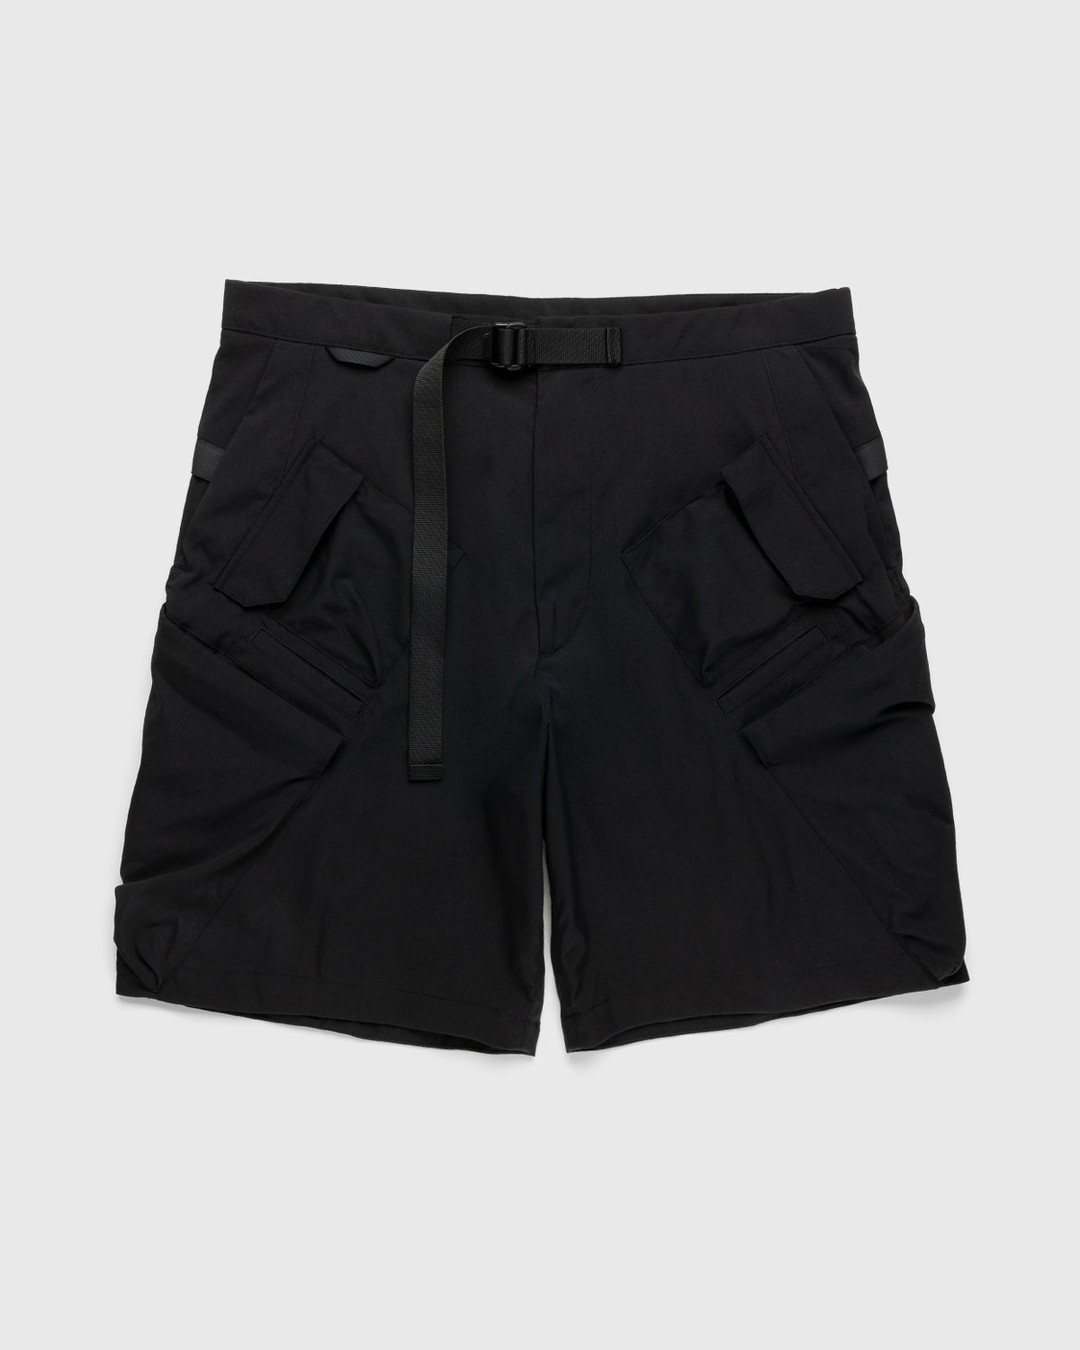 ACRONYM – SP29-M Cargo Shorts Black - Shorts - Black - Image 1